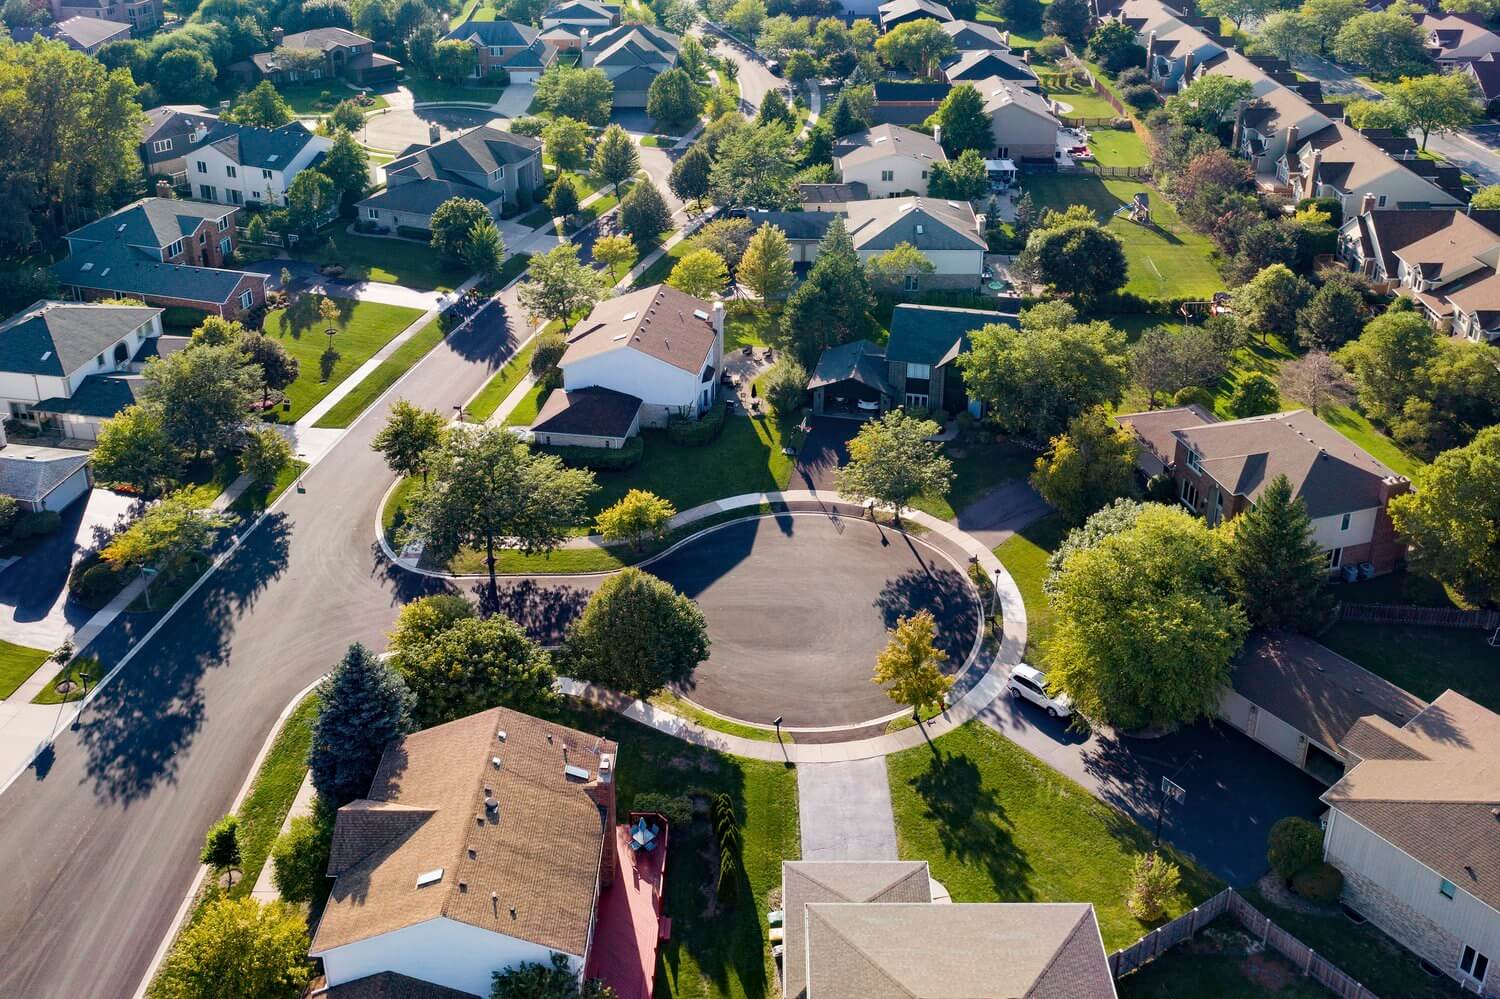 View of cul-de-sac in suburban neighborhood